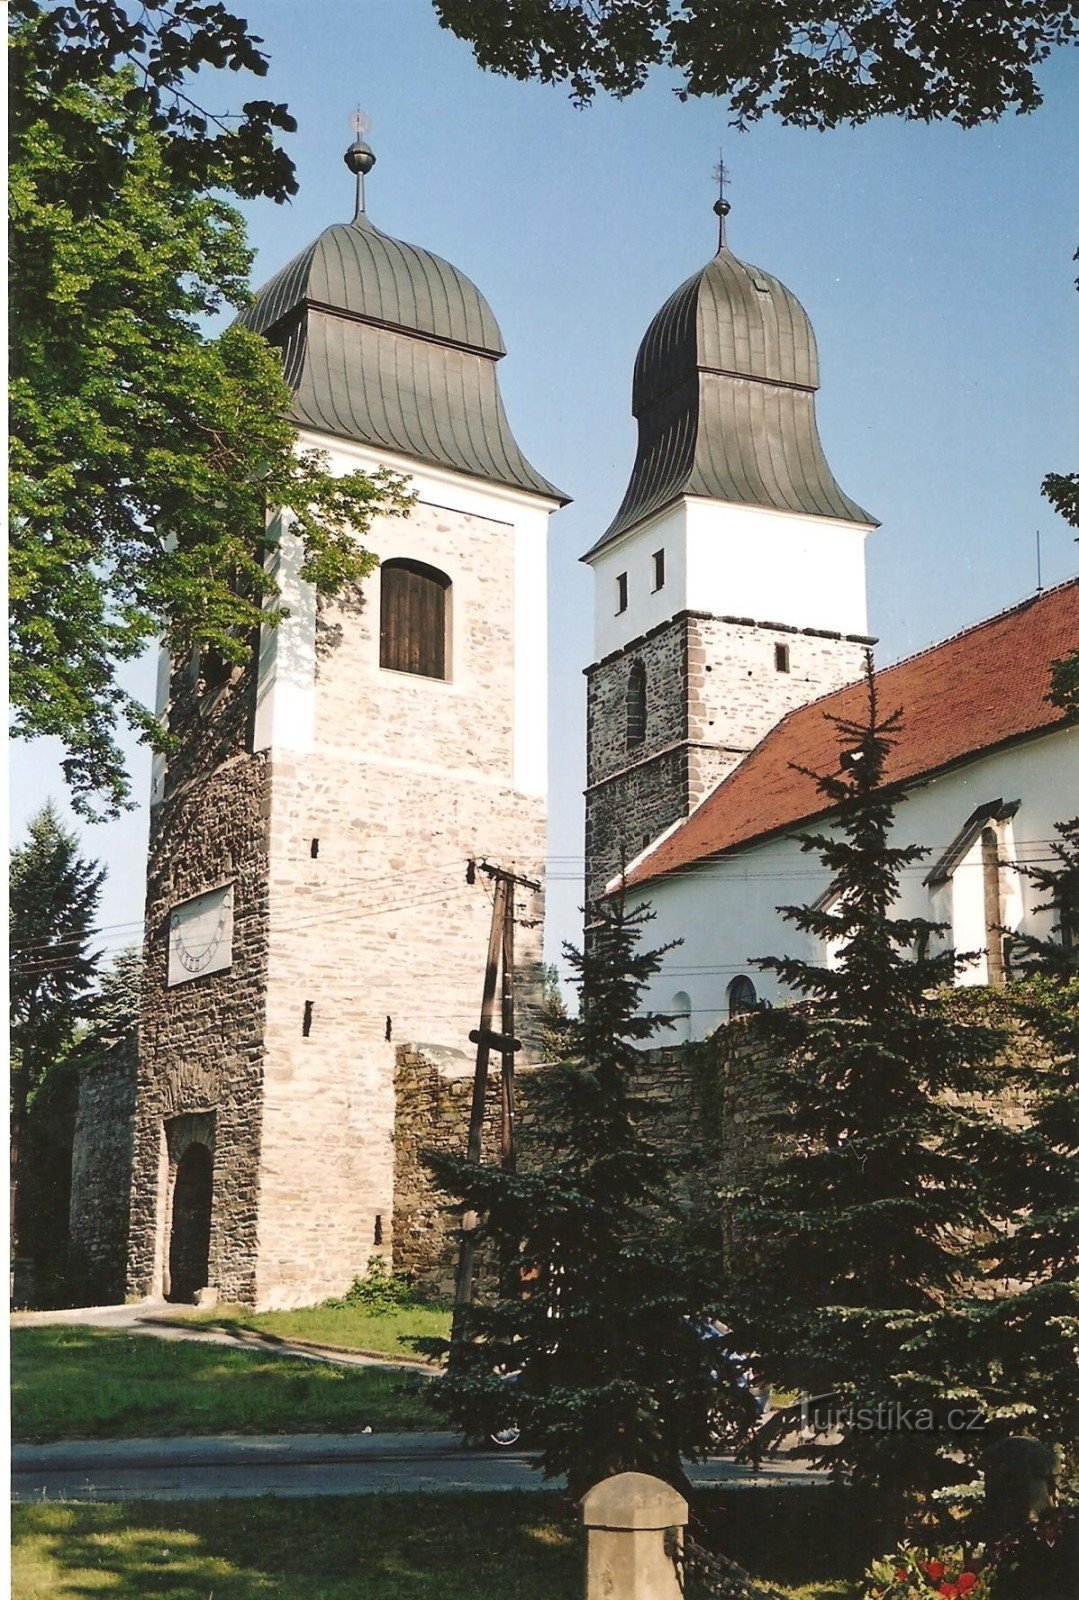 Tòa tháp lâu đài ở nhà thờ St. John the Baptist